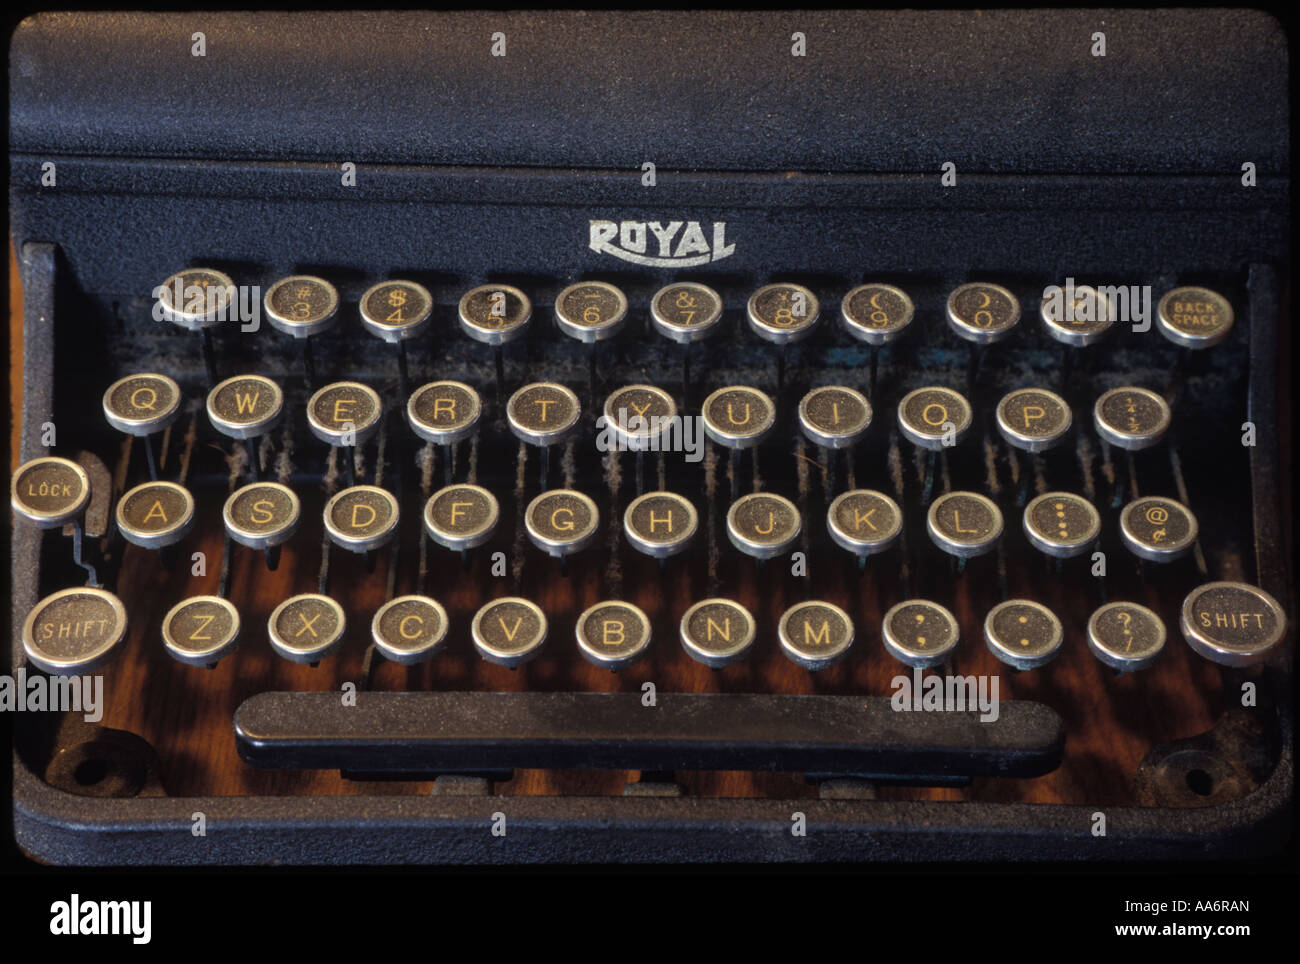 old Royal typewriter Stock Photo